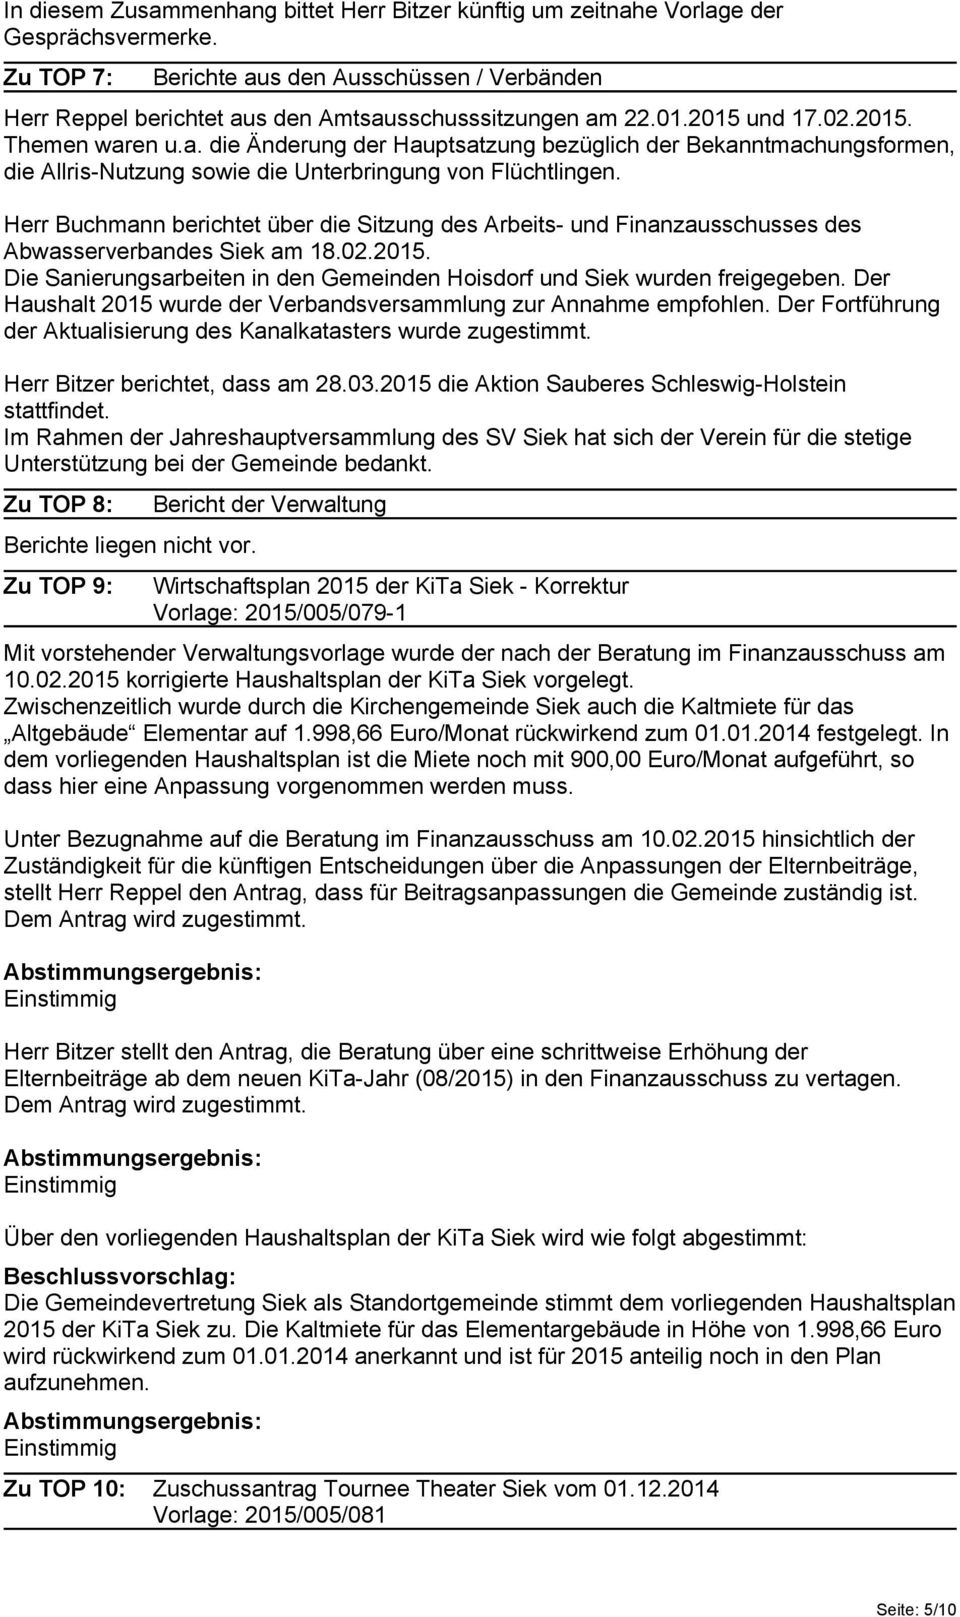 Herr Buchmann berichtet über die Sitzung des Arbeits- und Finanzausschusses des Abwasserverbandes Siek am 18.02.2015. Die Sanierungsarbeiten in den Gemeinden Hoisdorf und Siek wurden freigegeben.